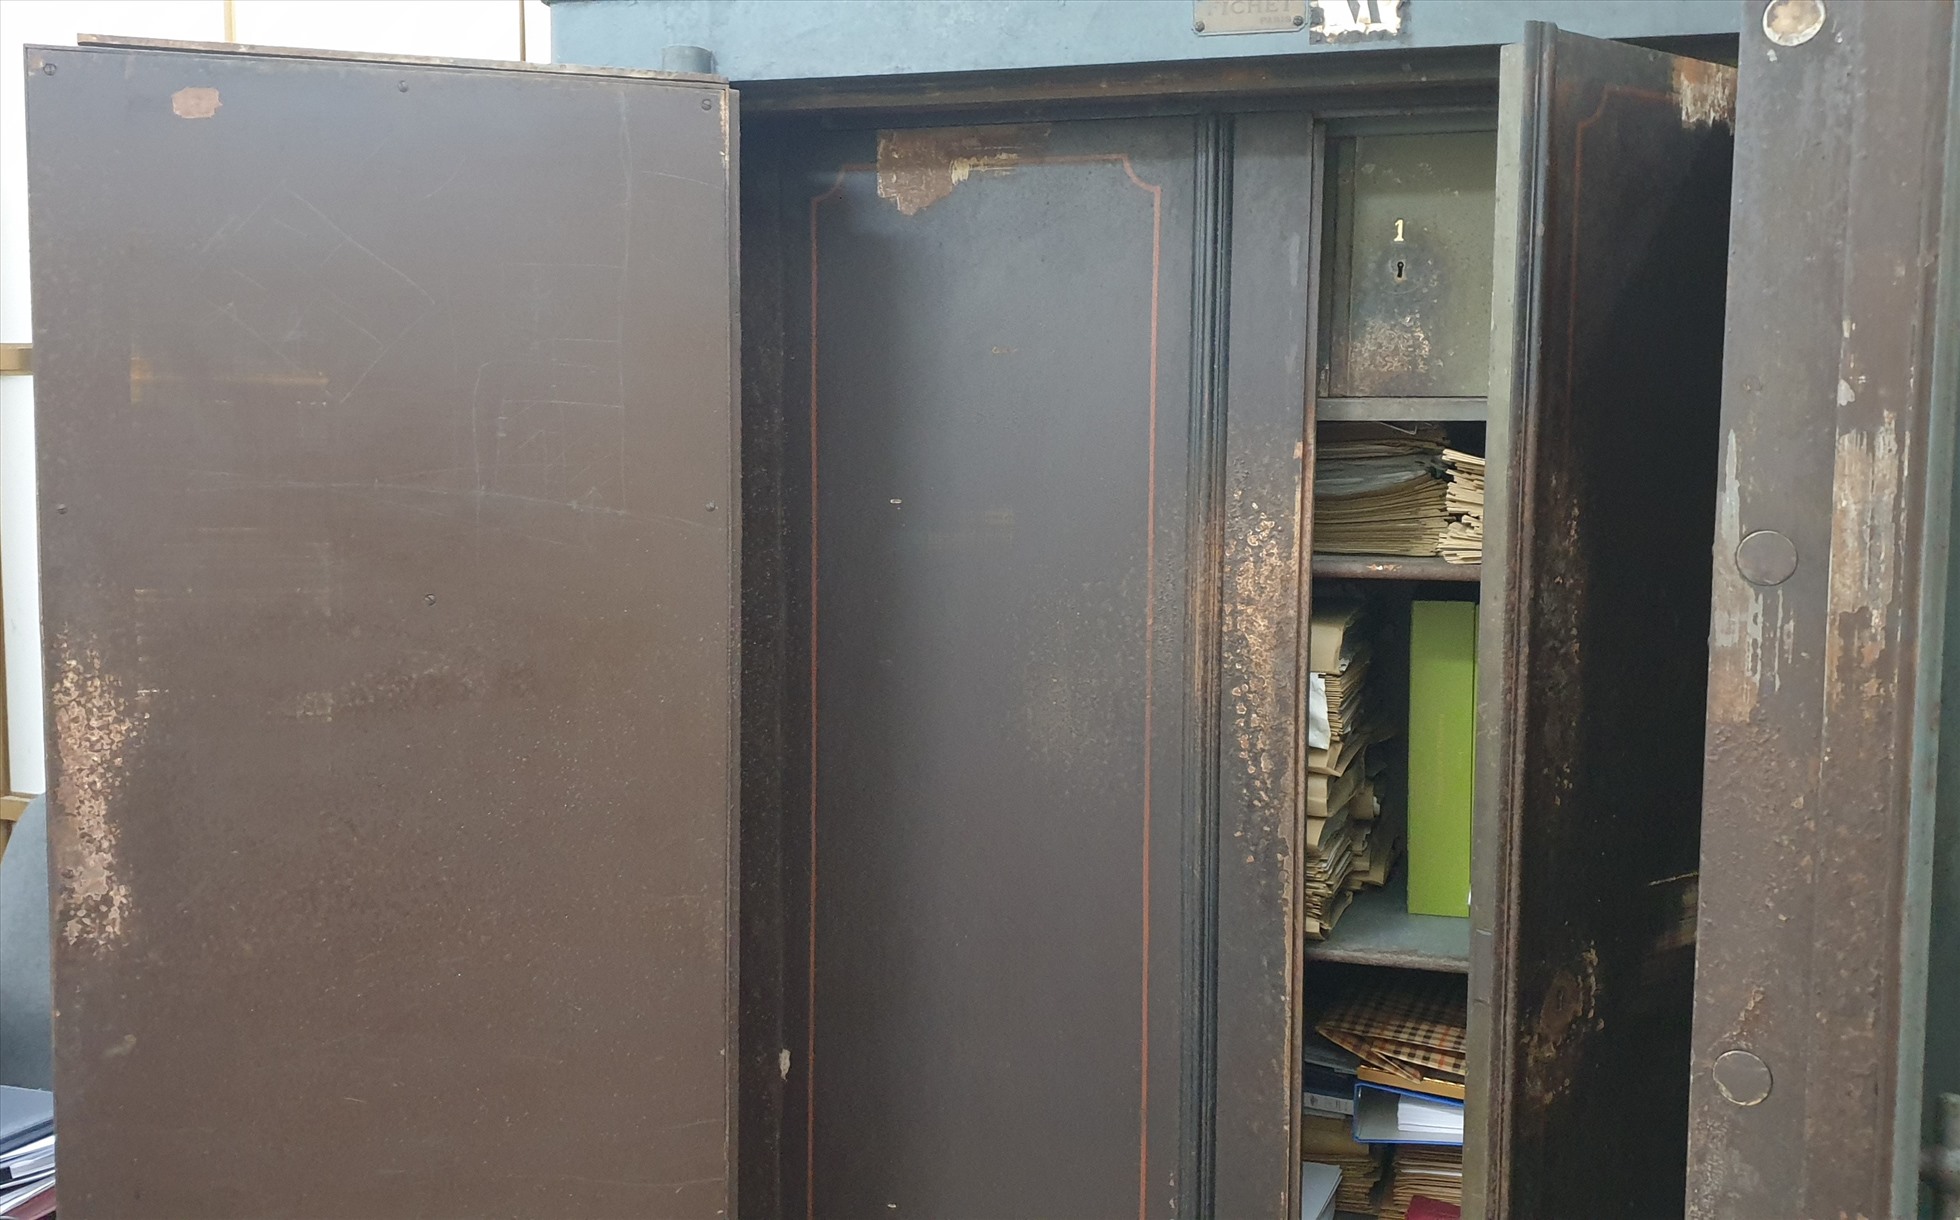 Một cái tủ sắt của người Pháp để lại hiện vẫn được sử dụng để cất giữ giấy tờ. Chiếc tủ này có 2 lớp cửa sắt rất dày. Ảnh: Nguyễn Hùng